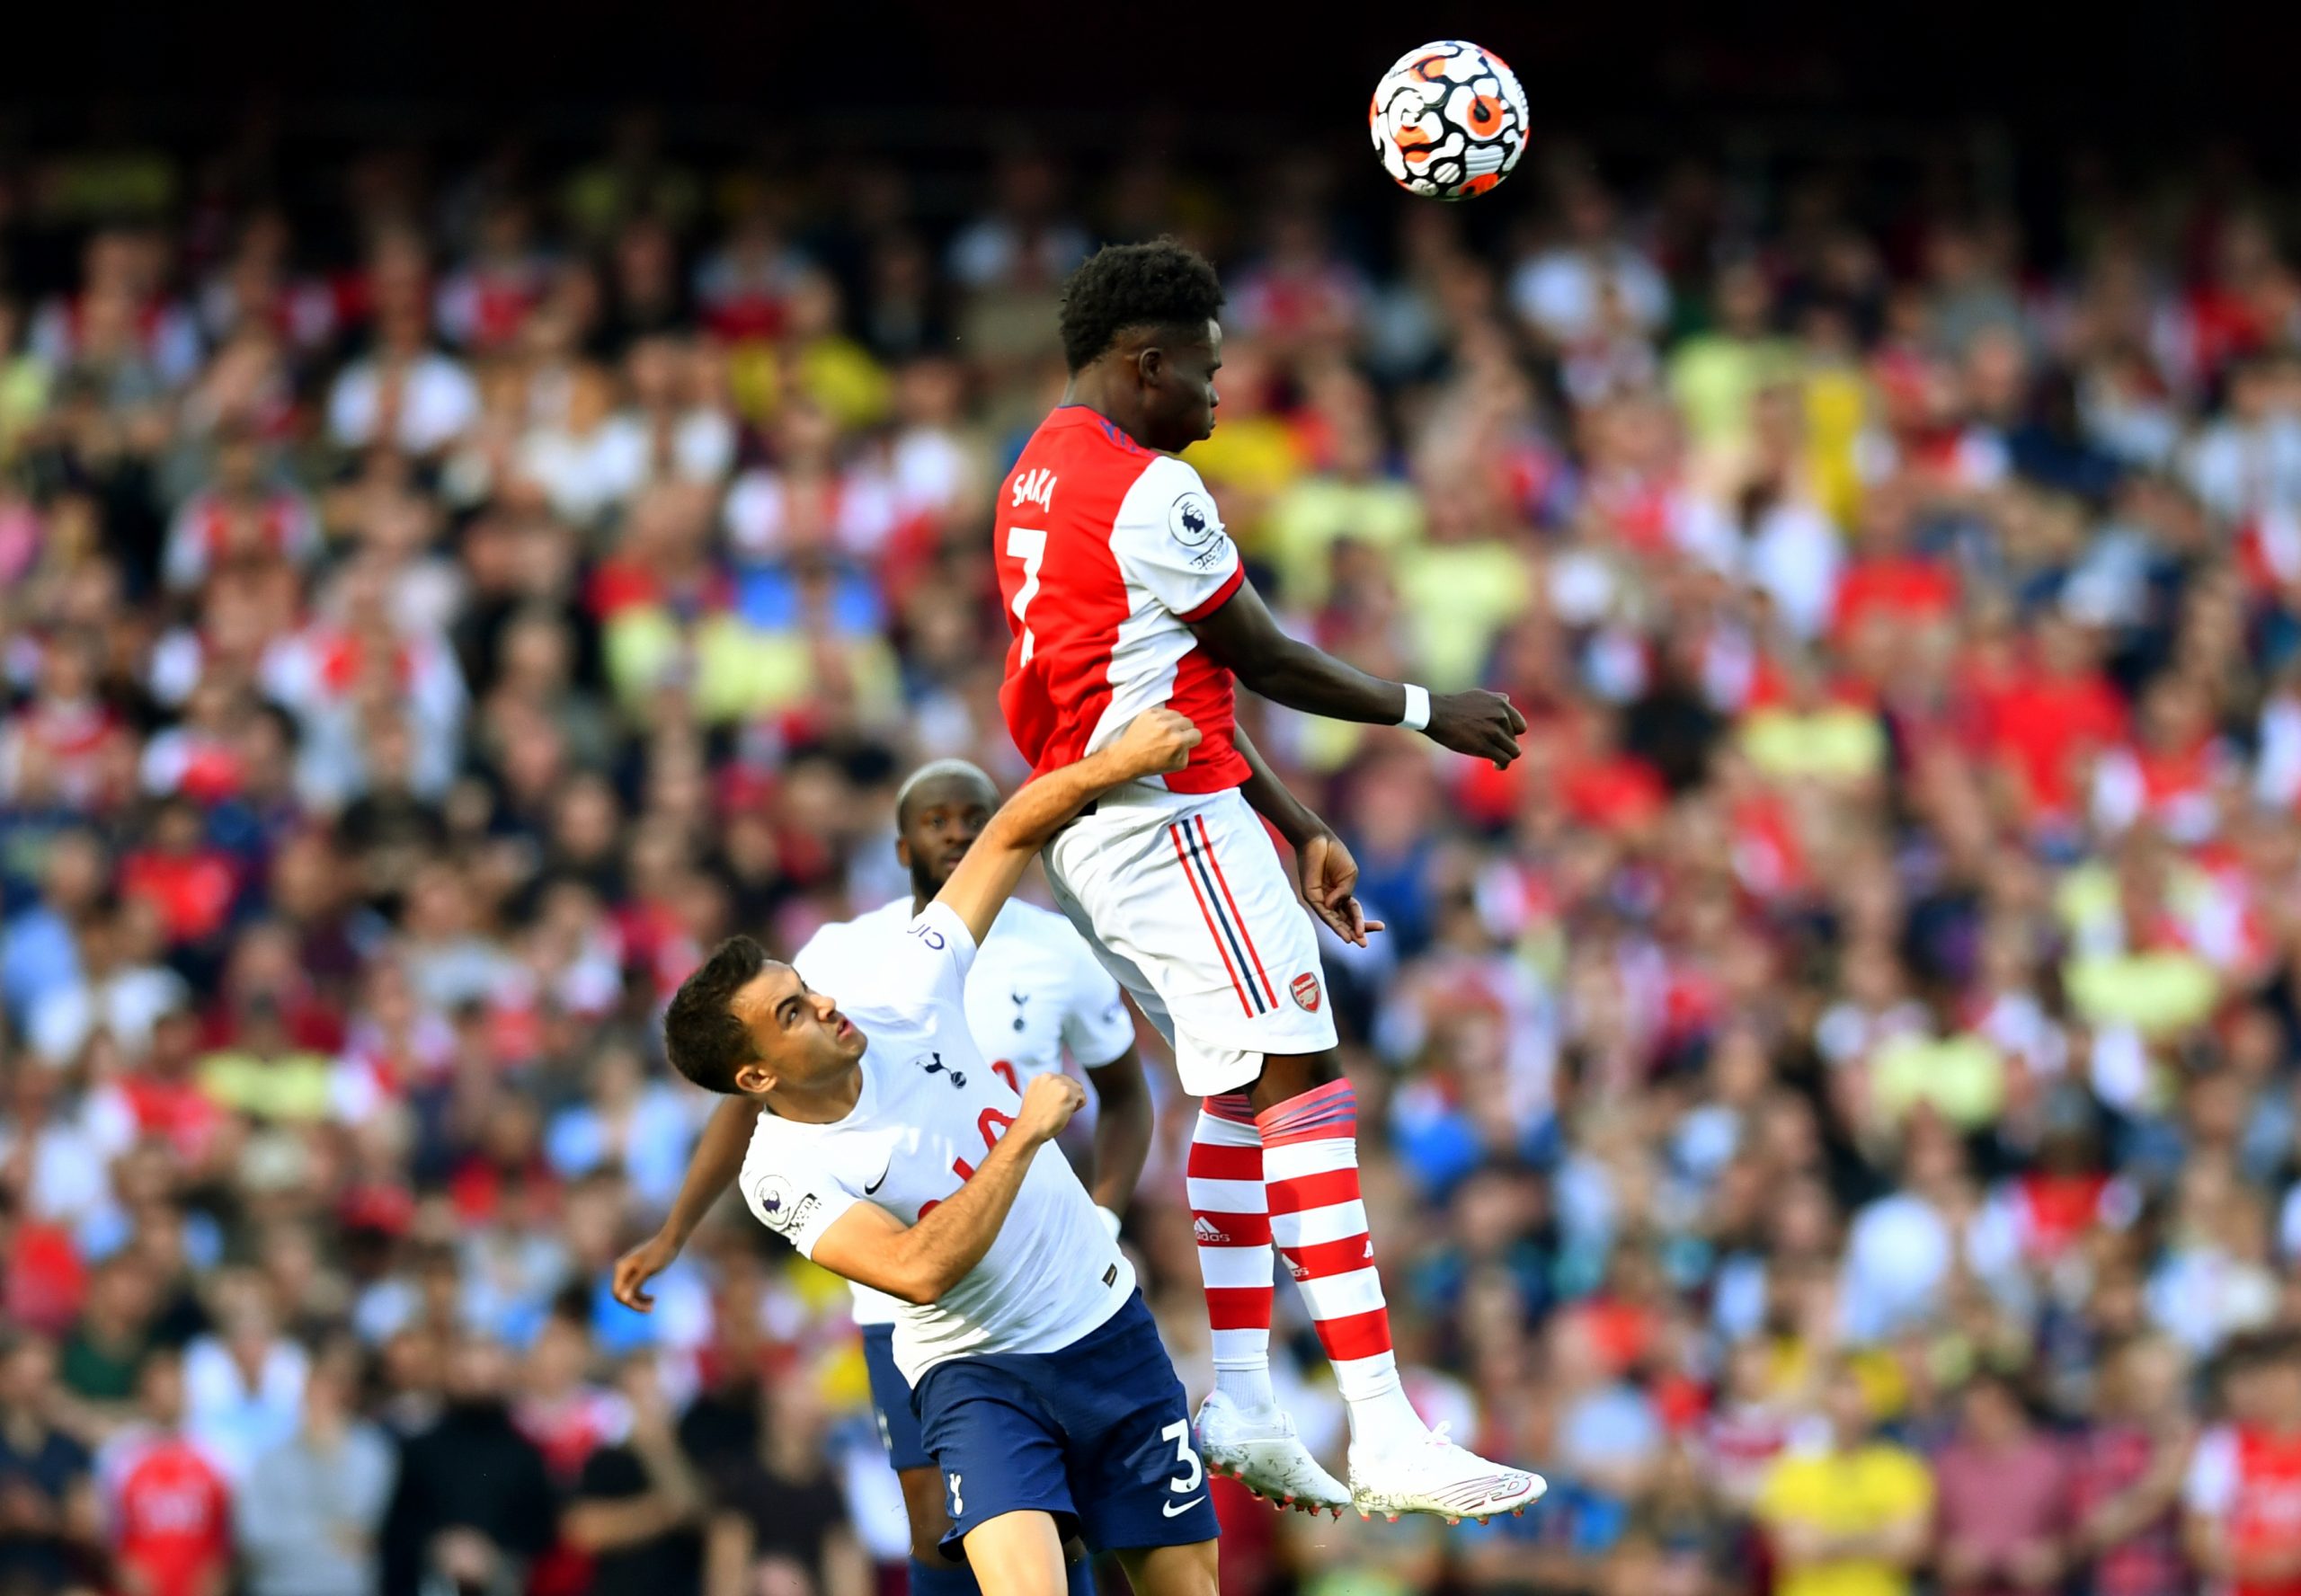 Arsenal trounce Tottenham as resurgence continues